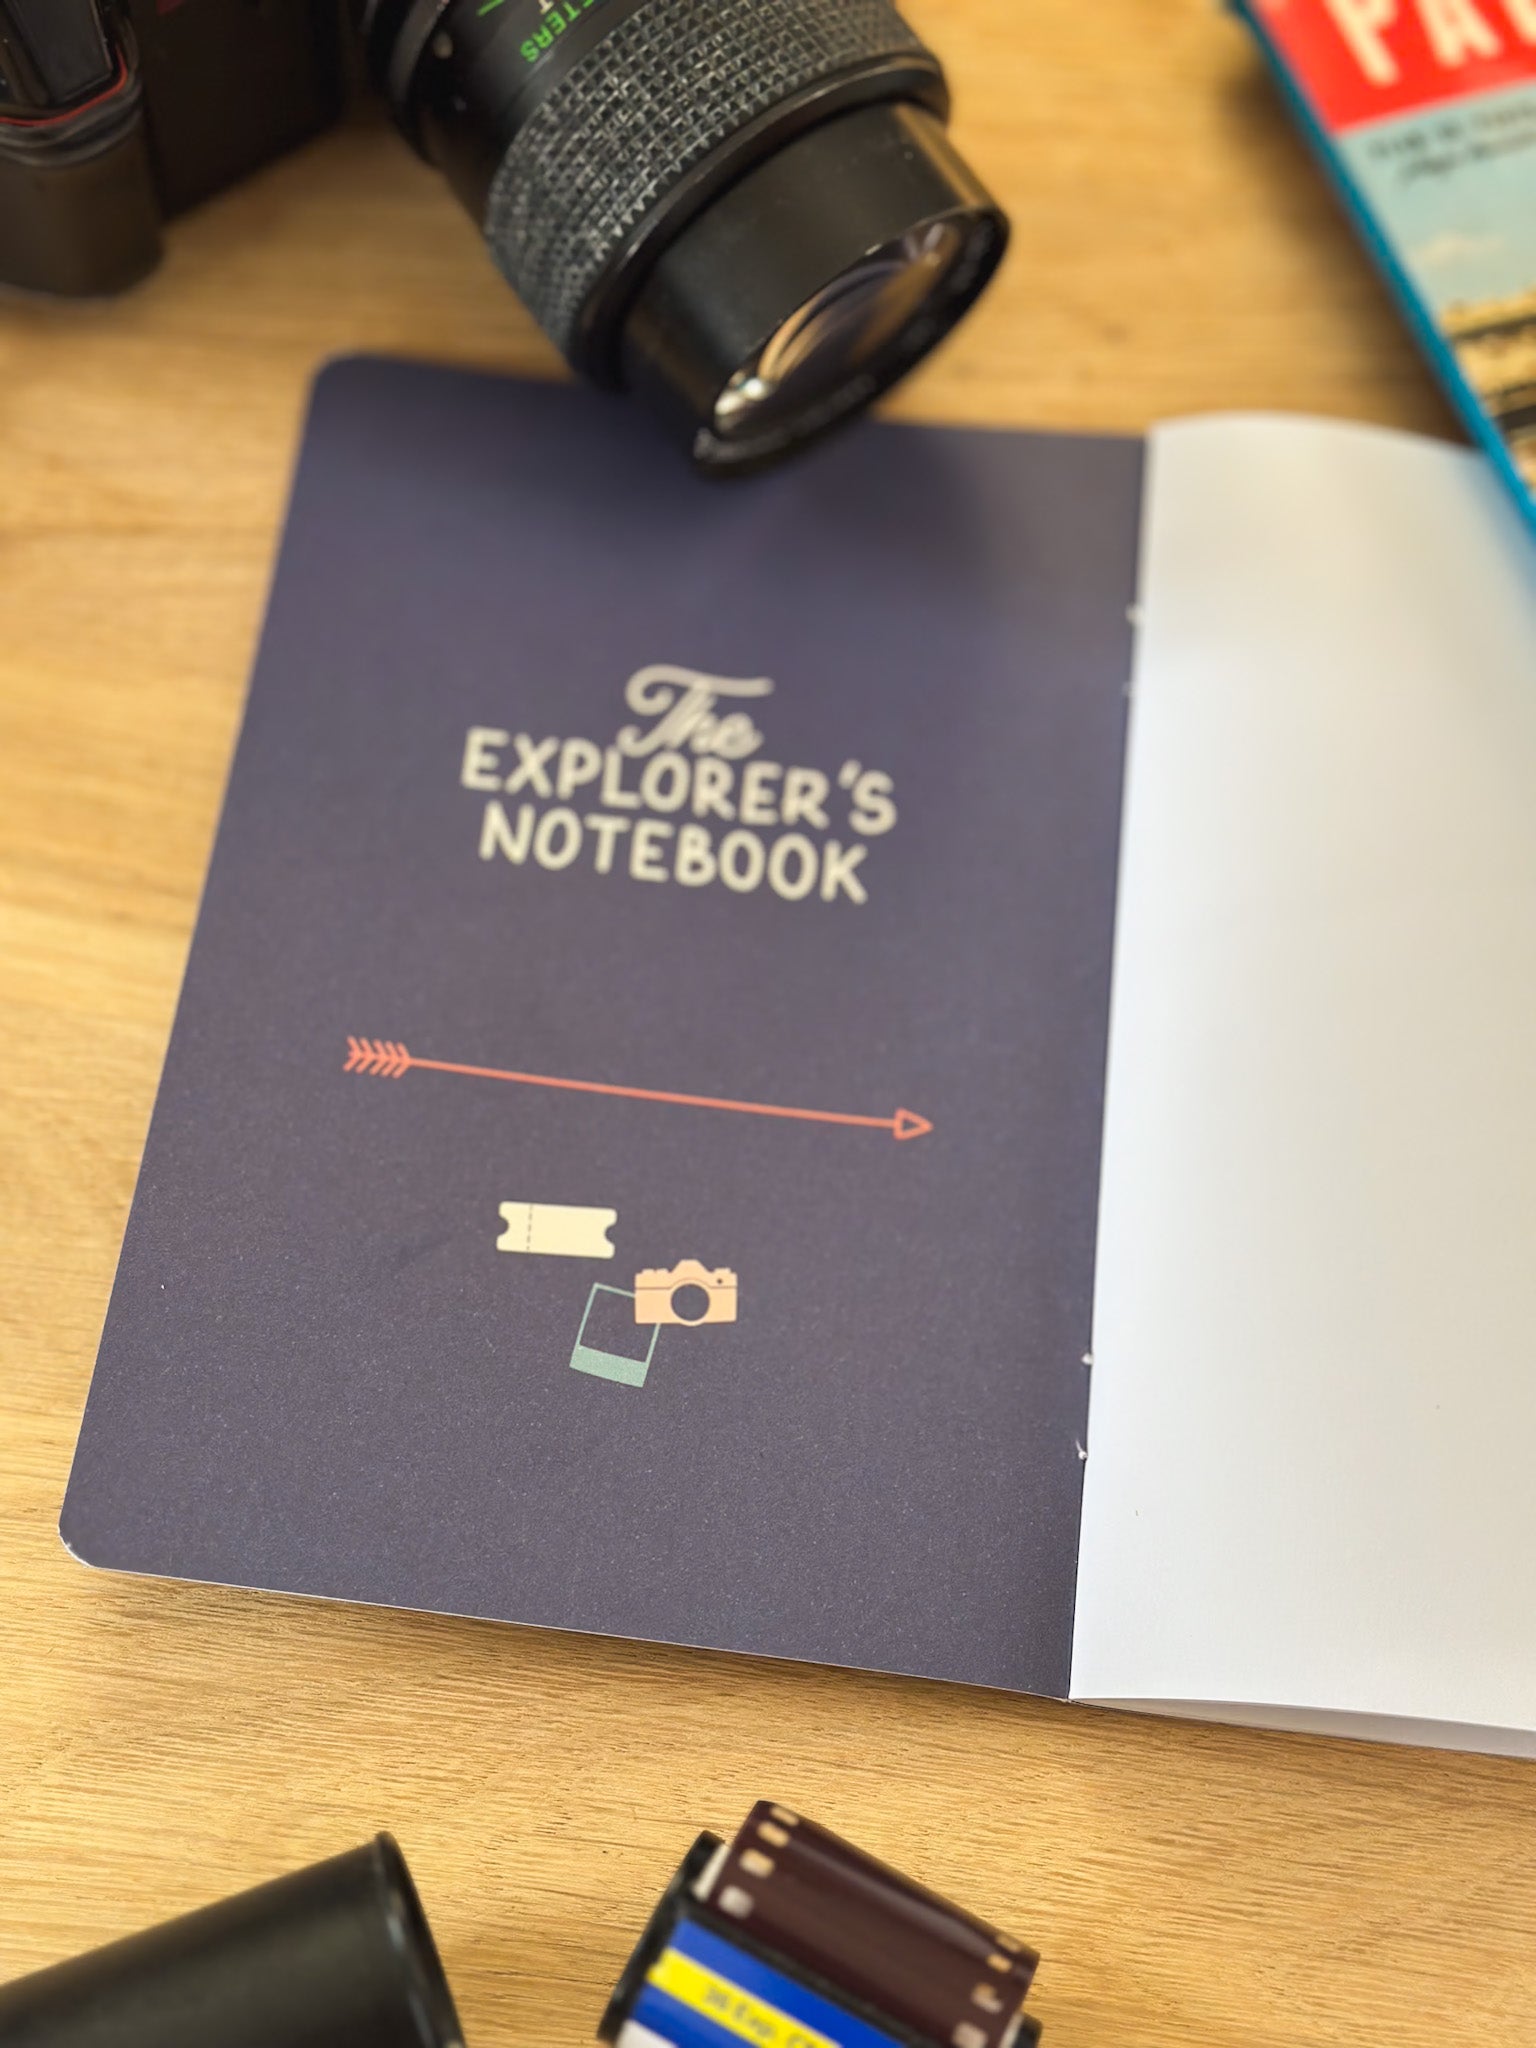 Reisetagebuch The Explorers Notebook Band 4 Stadtbummel Erste Seite mit alter Kamera daneben und Illustrationen 